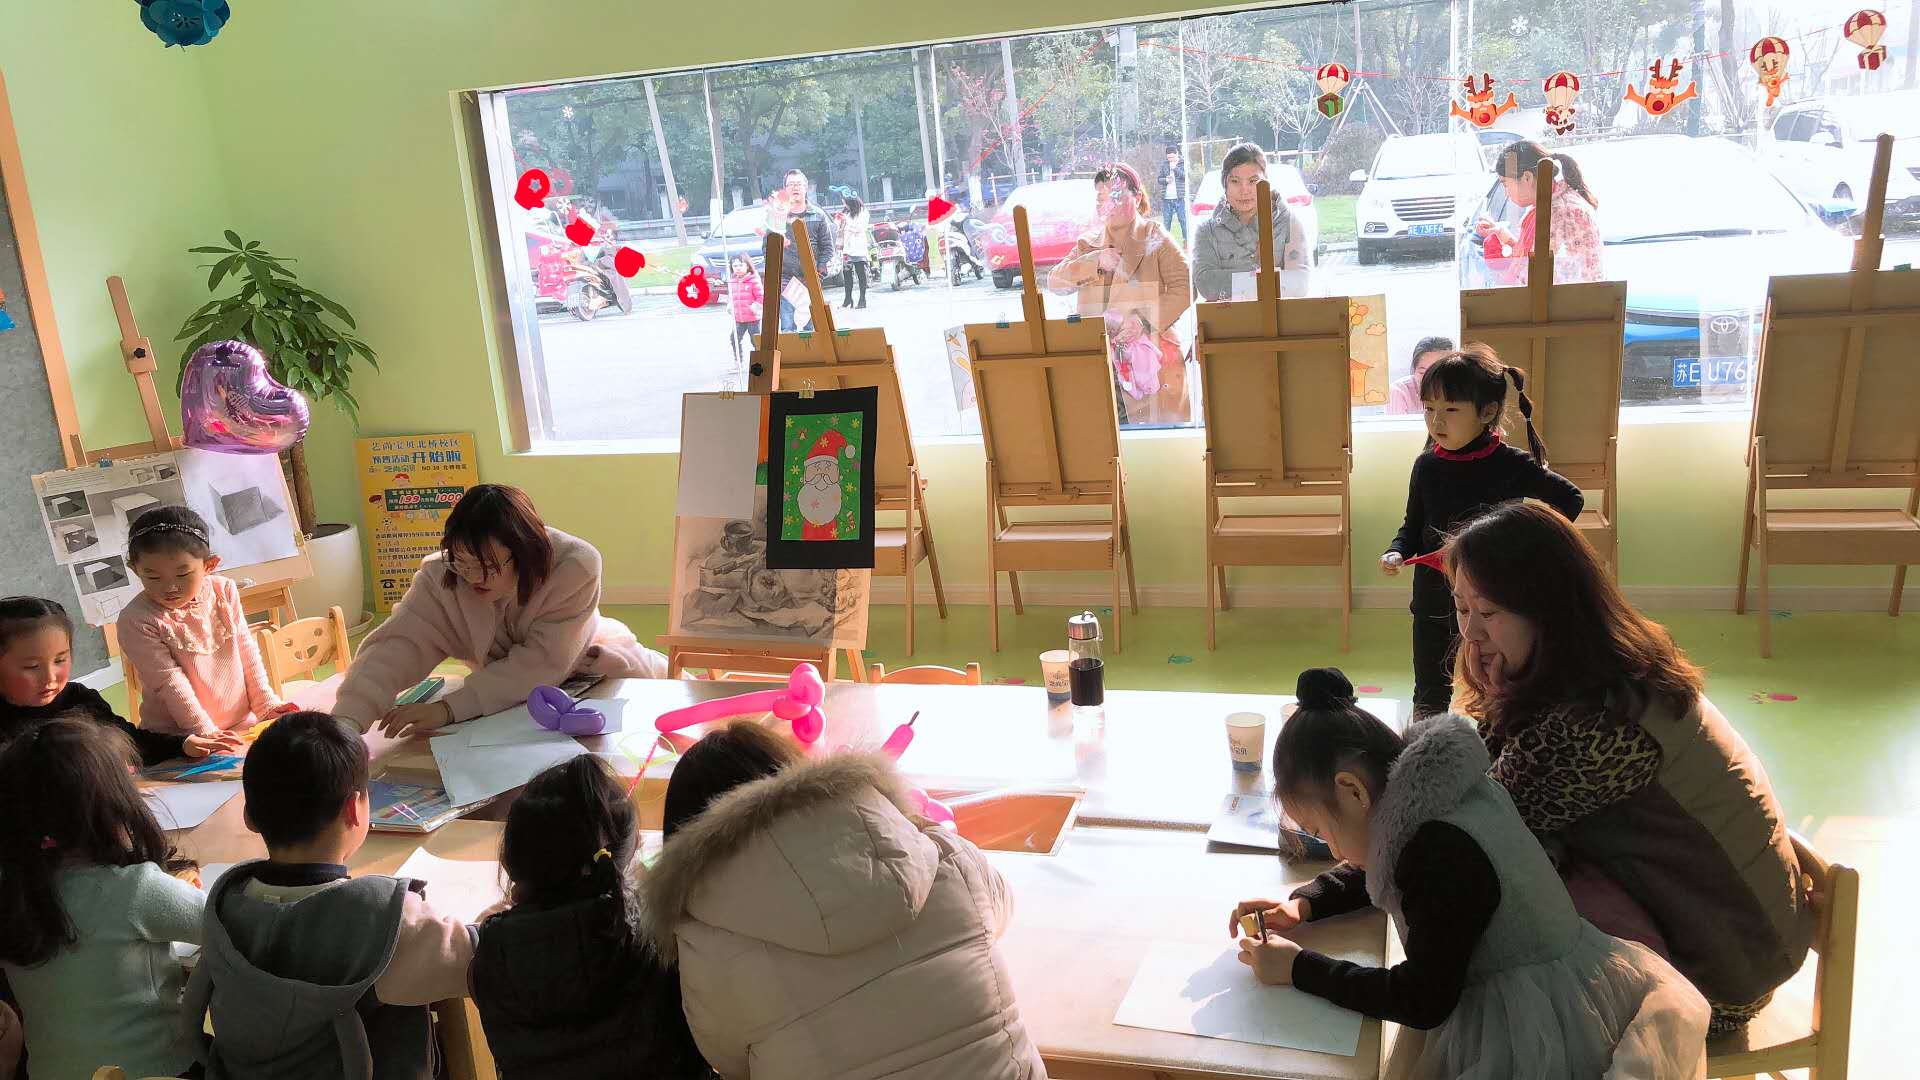 苏州少儿创意美术培训班,让孩子告别千篇一律的简笔画